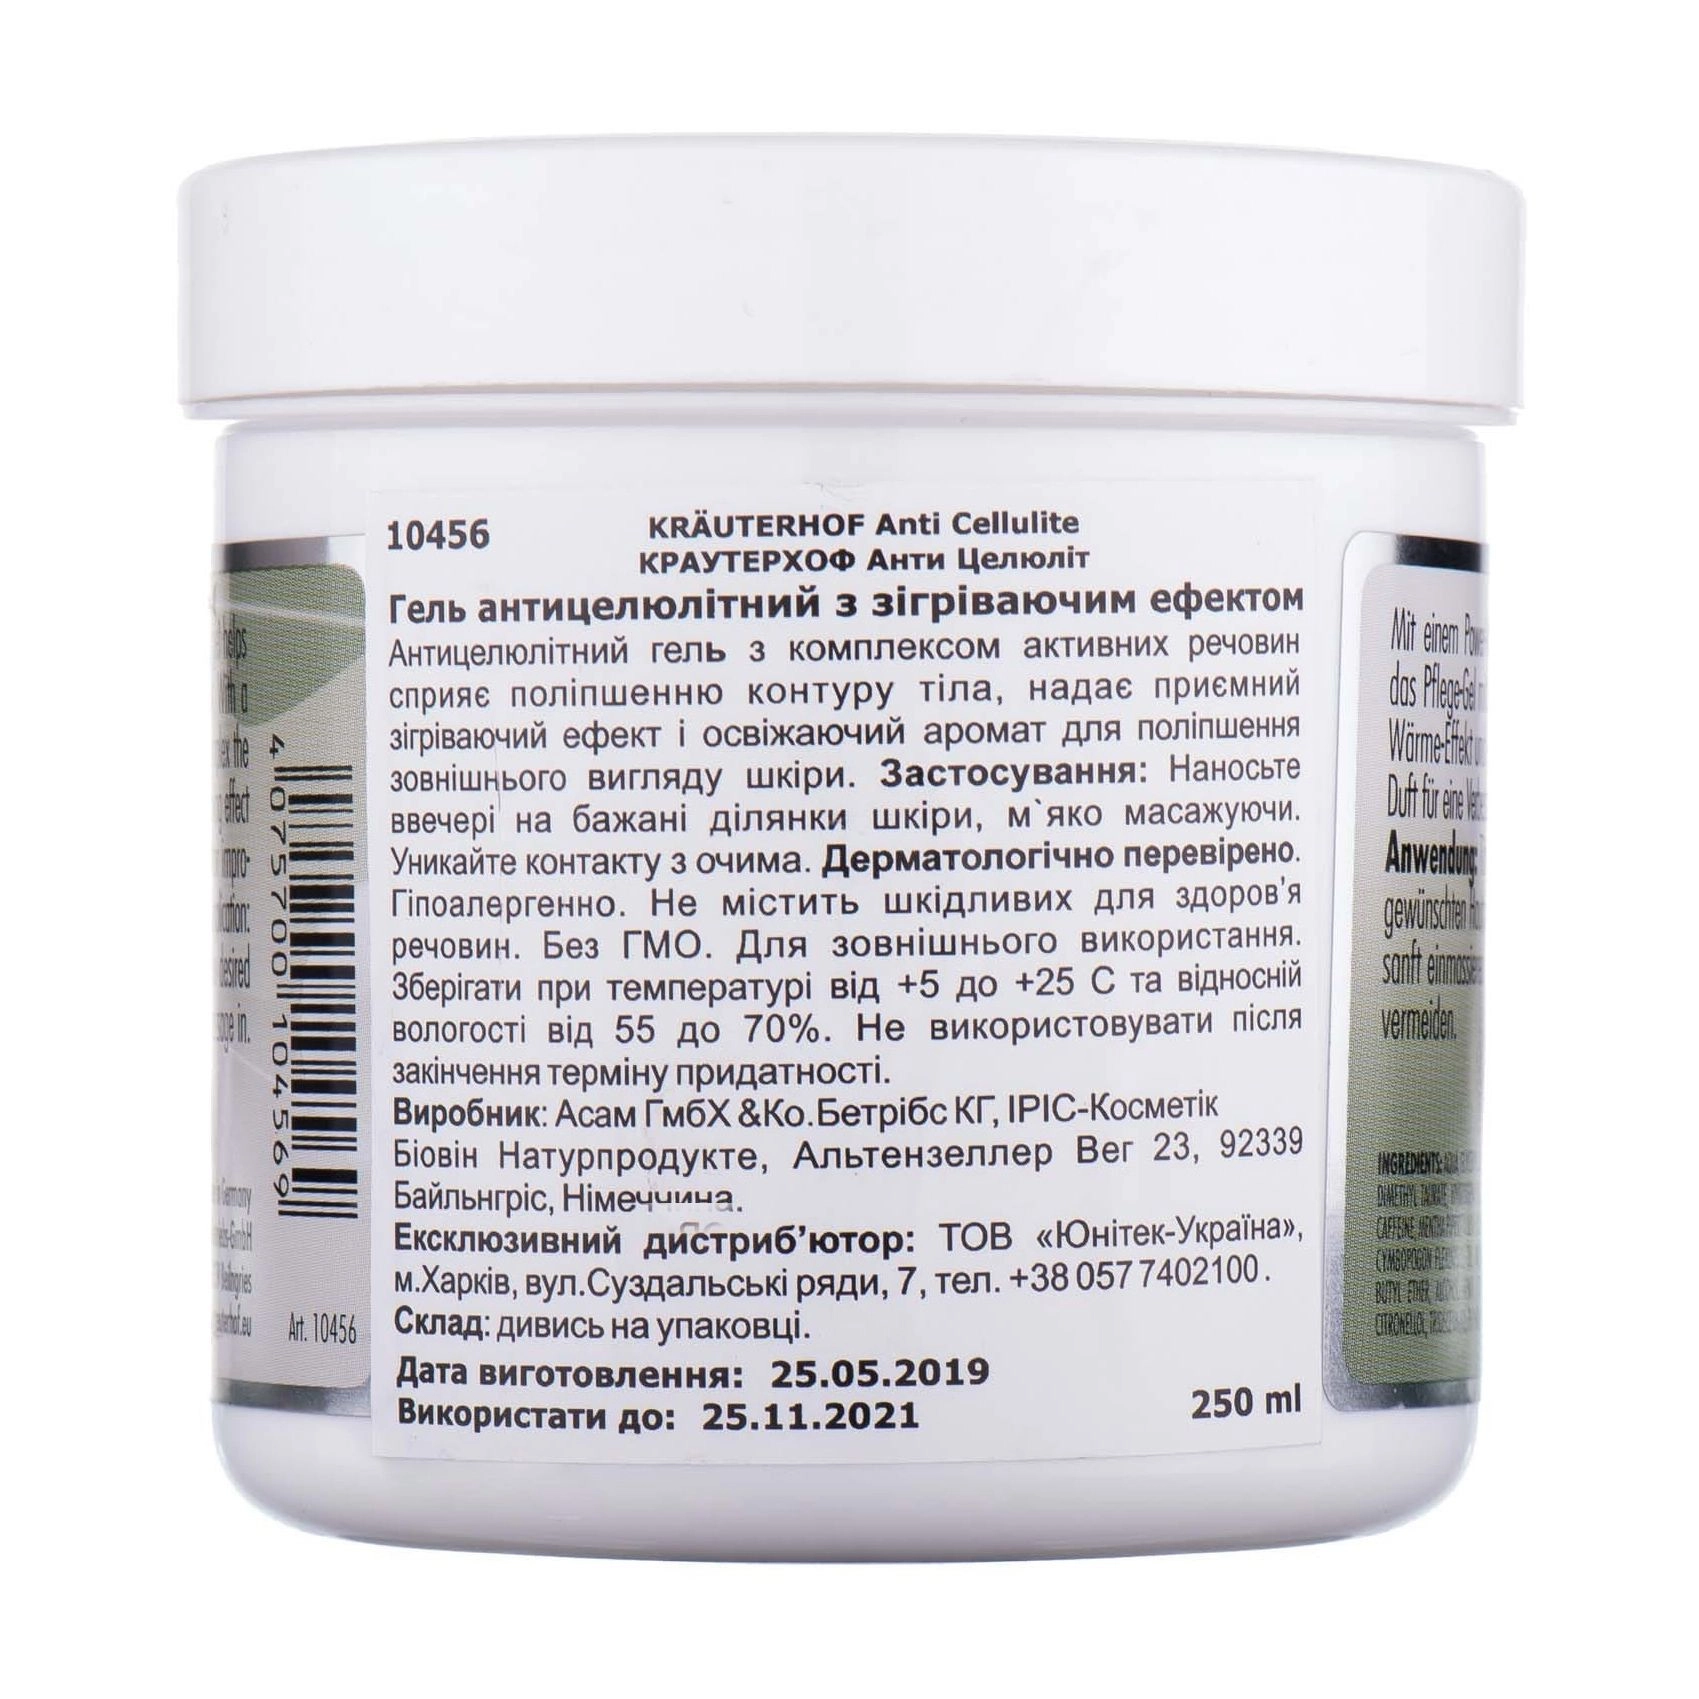 Krauterhof Гель Anti Cellulite антицеллюлитный с согревающим эффектом, 250мл - фото N2